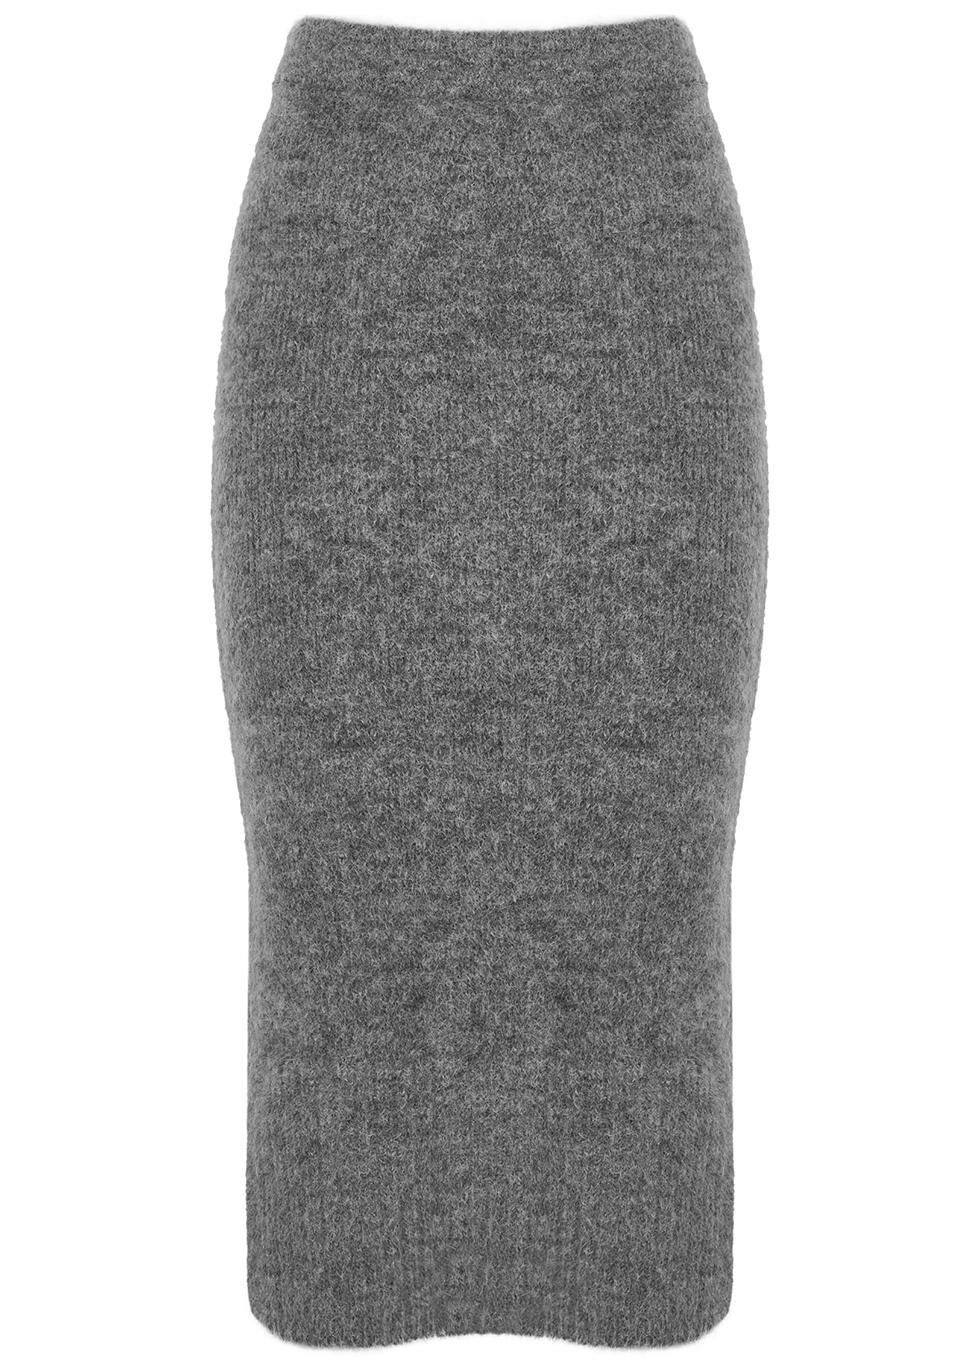 Pierre grey knitted midi skirt by DAY BIRGER ET MIKKELSEN